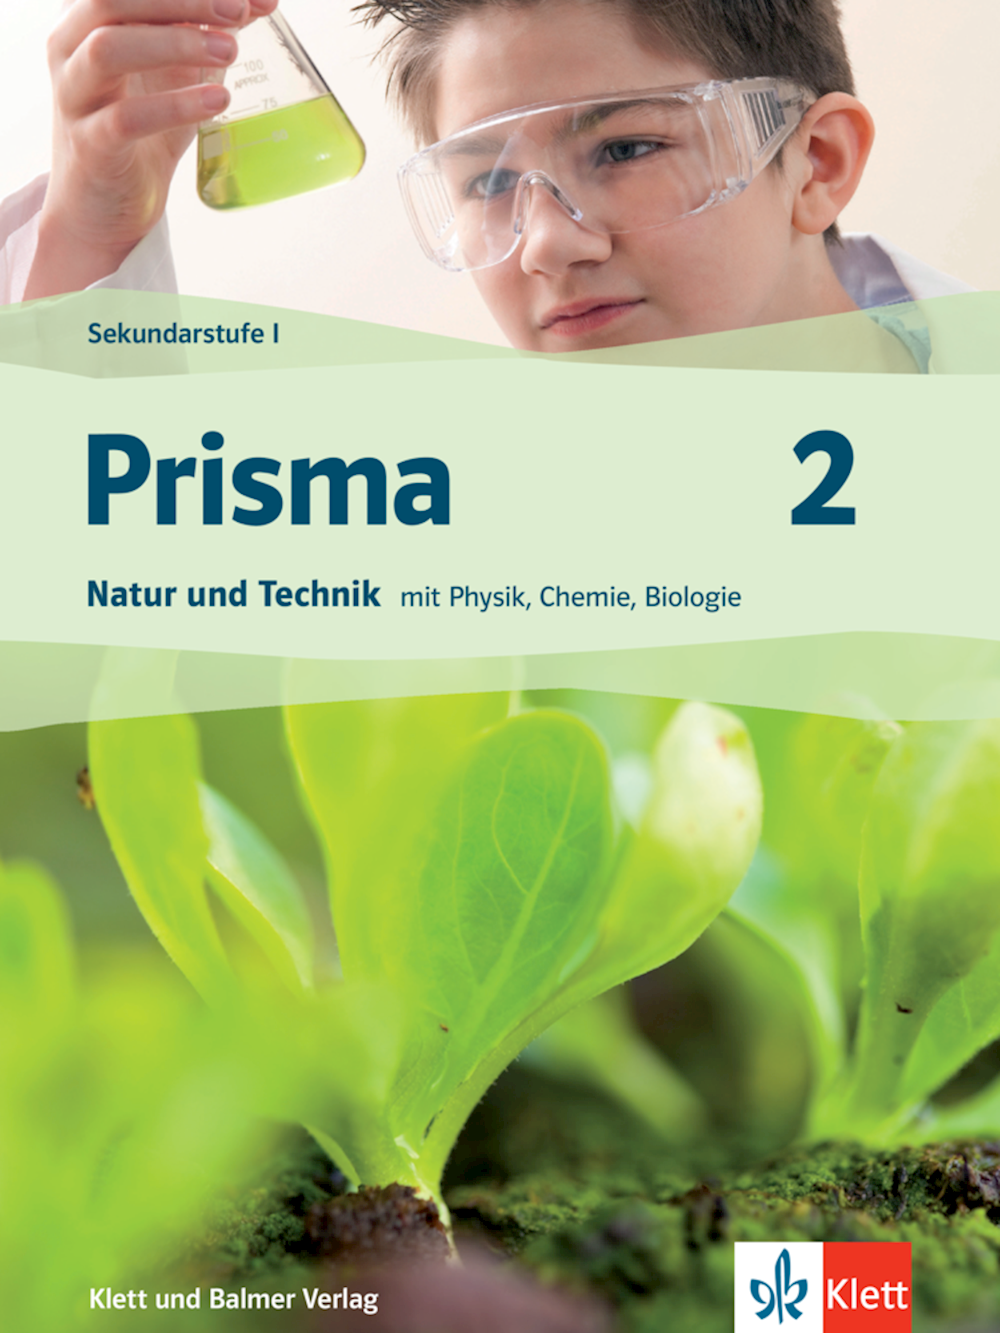 Prisma Natur und Technik 2 Themenbuch mit Animatio